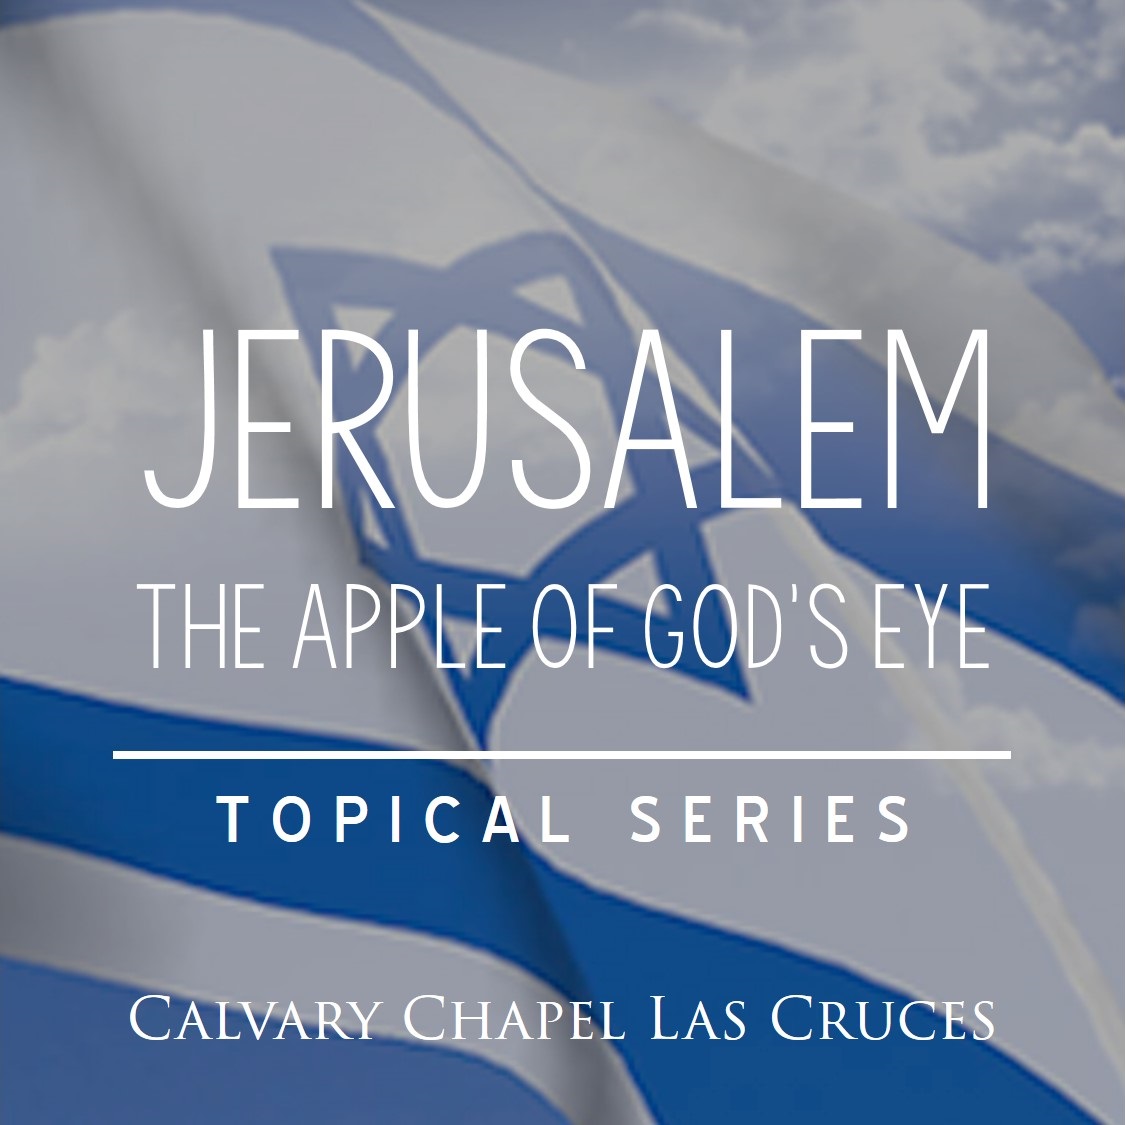 Jerusalem: The Apple of God’s Eye, Part 2